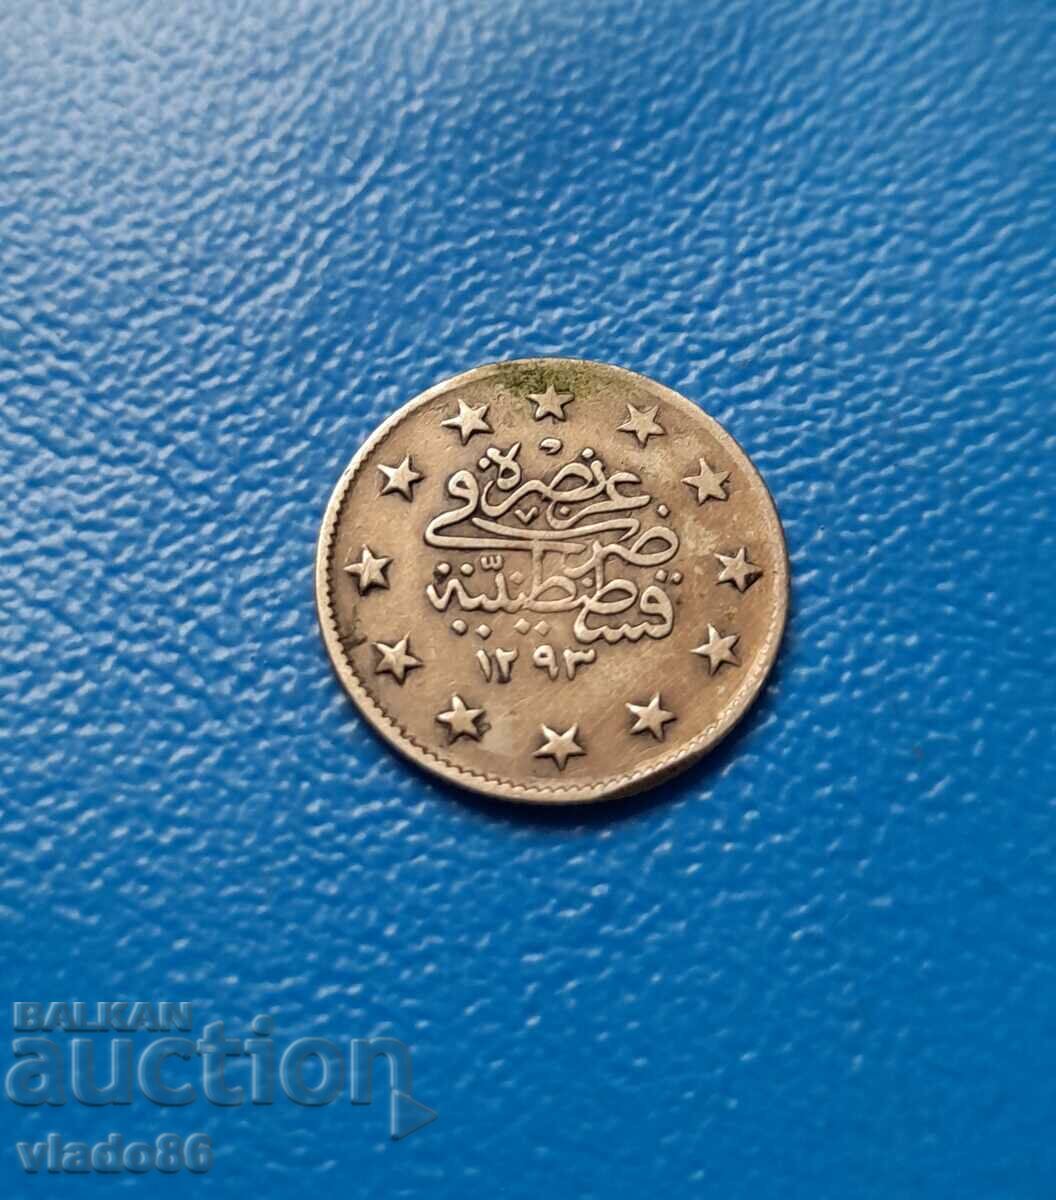 Ottoman silver coin 2 kurusha